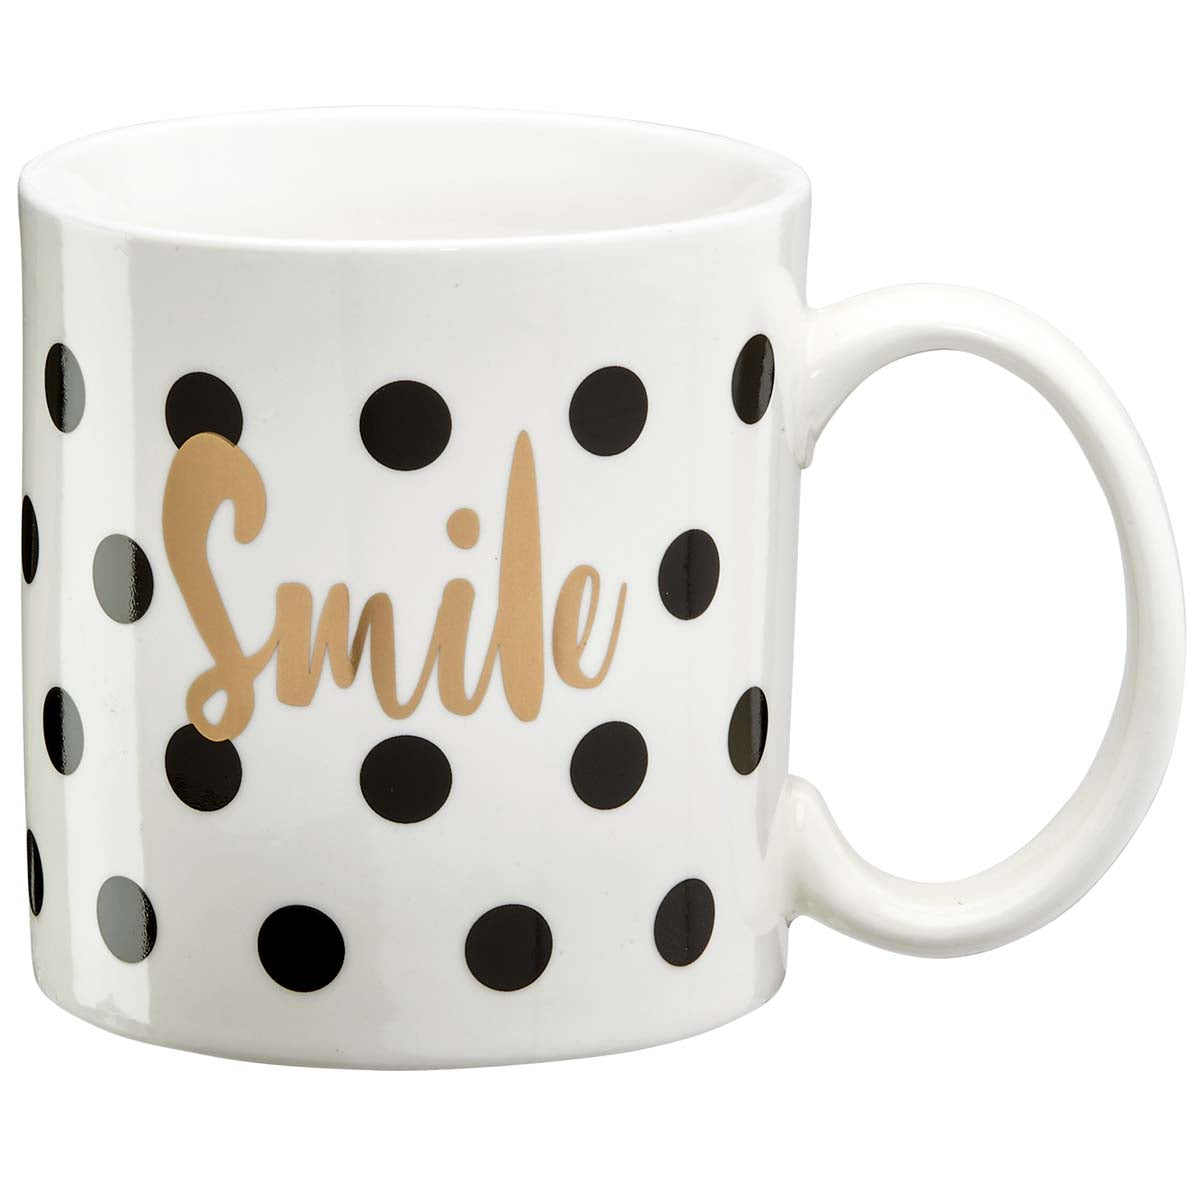 Smile gift mug